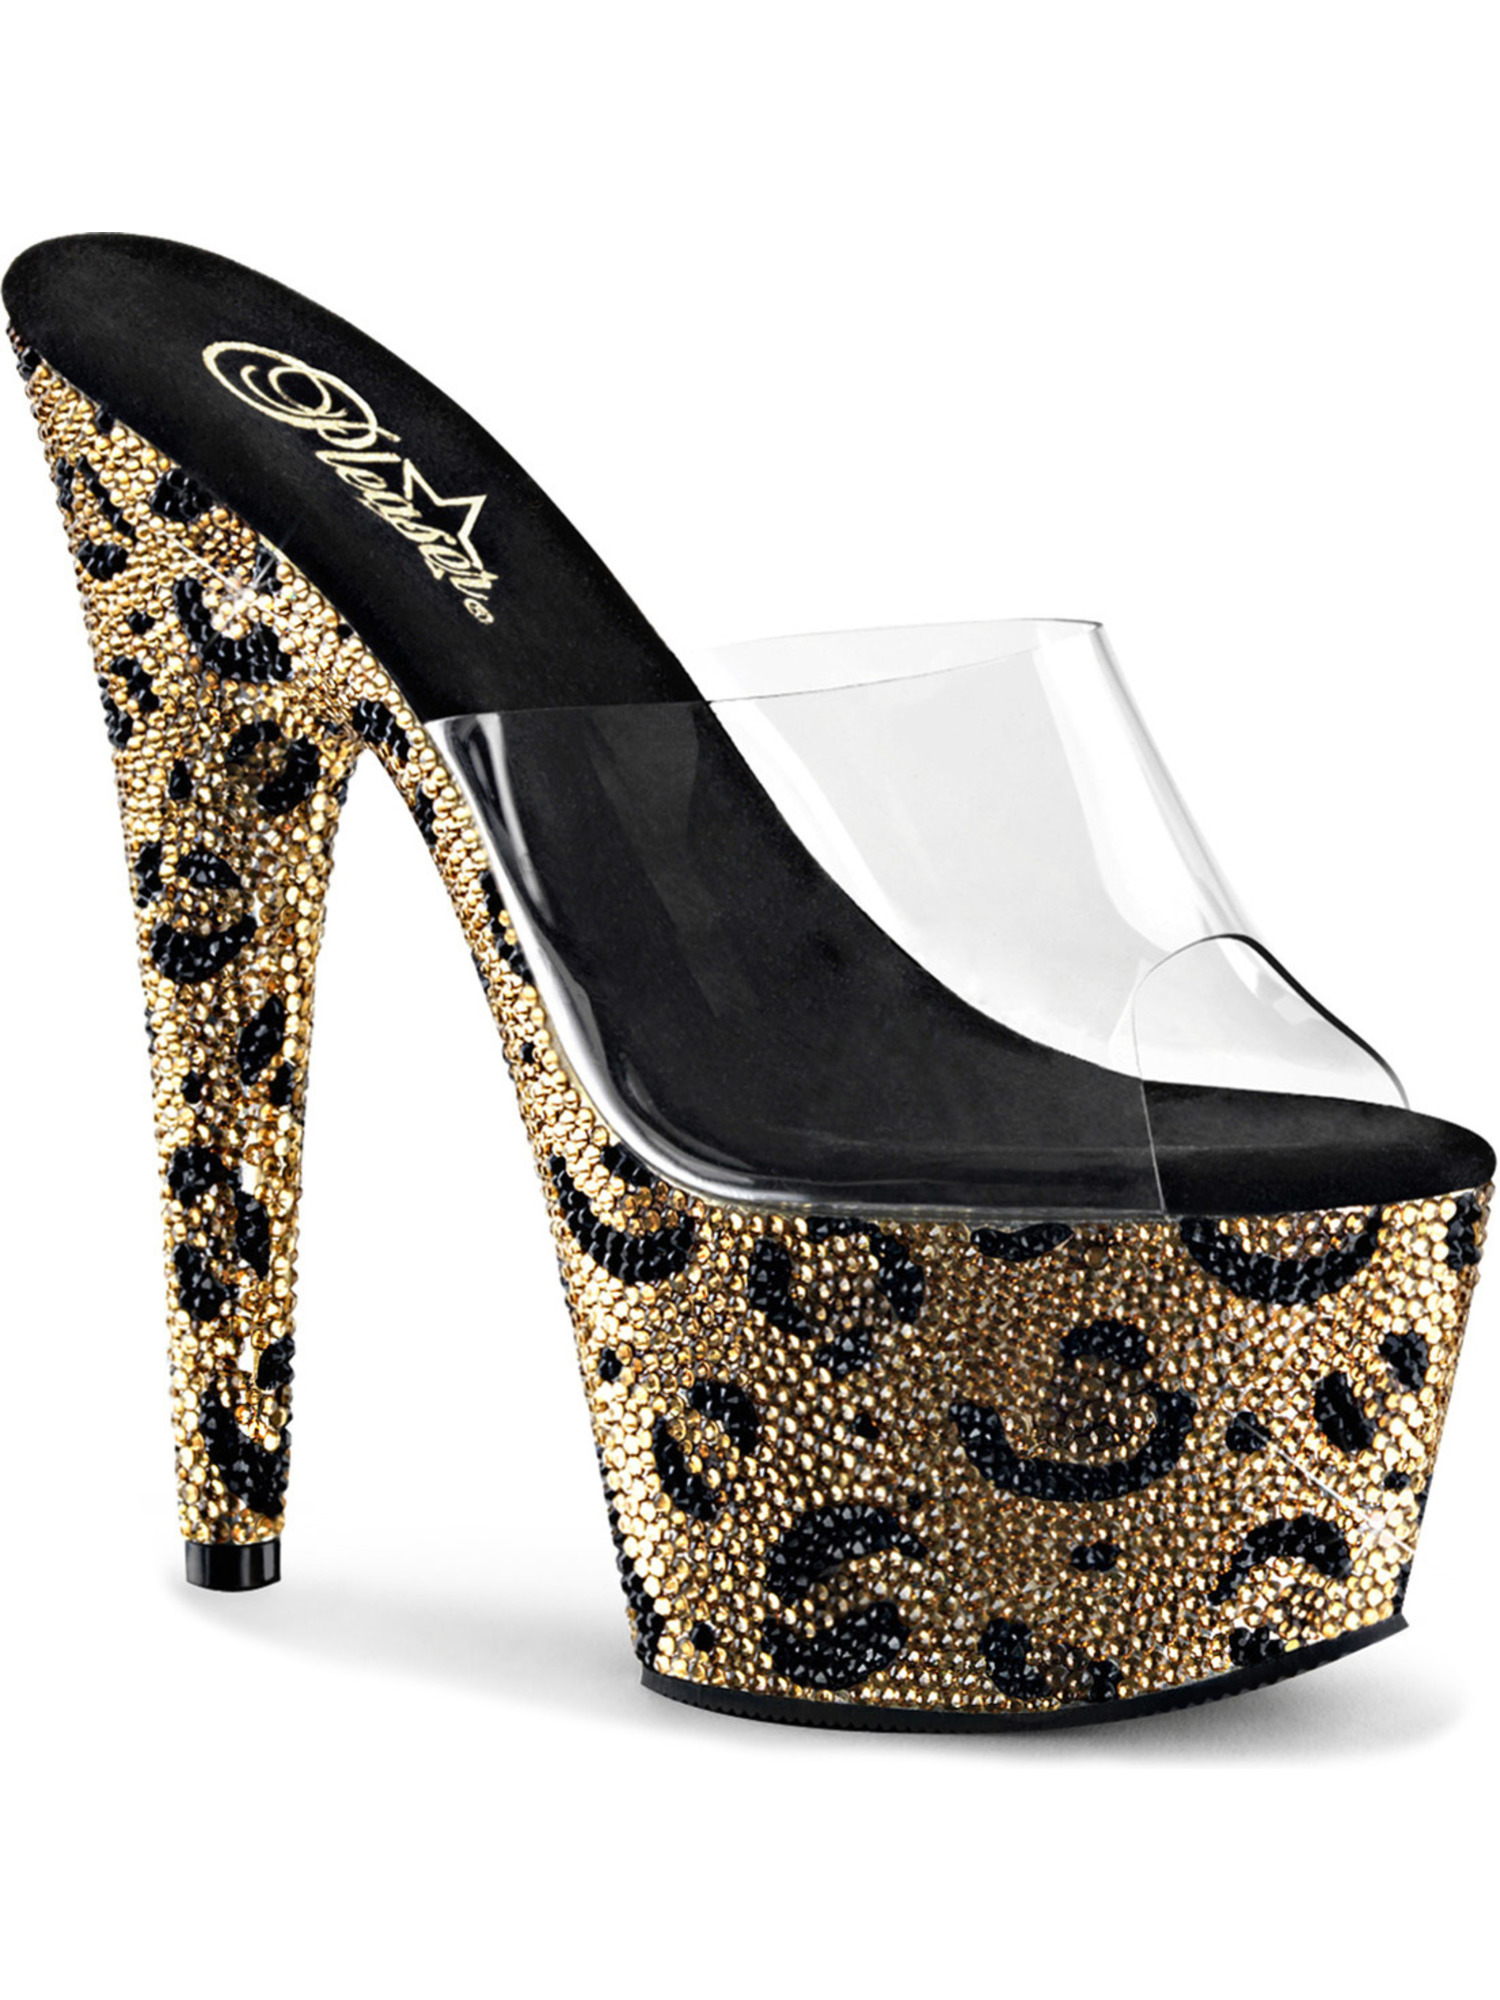 size 9 leopard print shoes